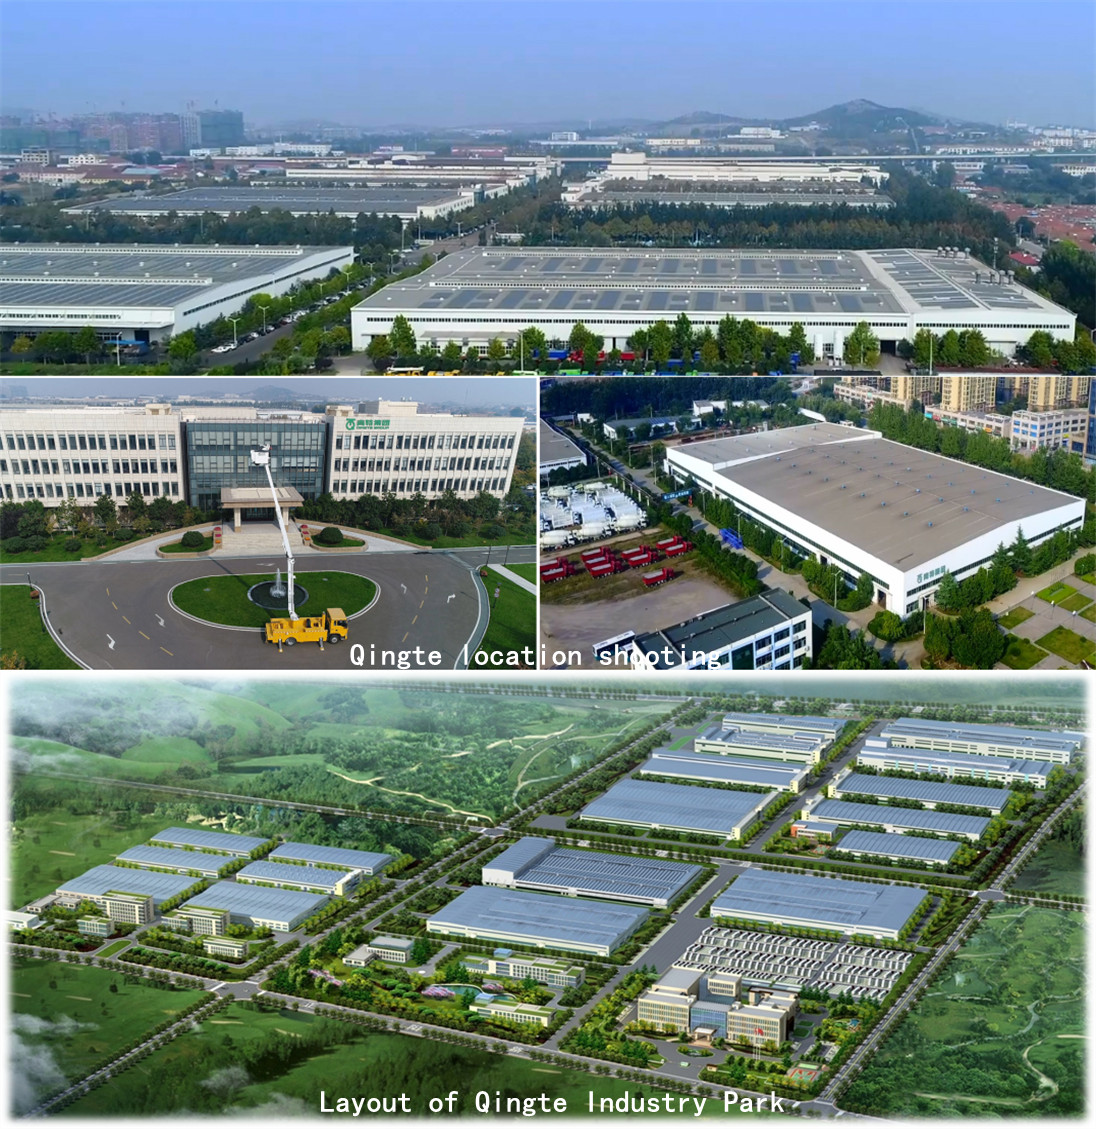 רשימת קבוצת Qingte ב"100 מפעלי חלפי הרכב המובילים בסין" במשך שבע שנים רצופות.